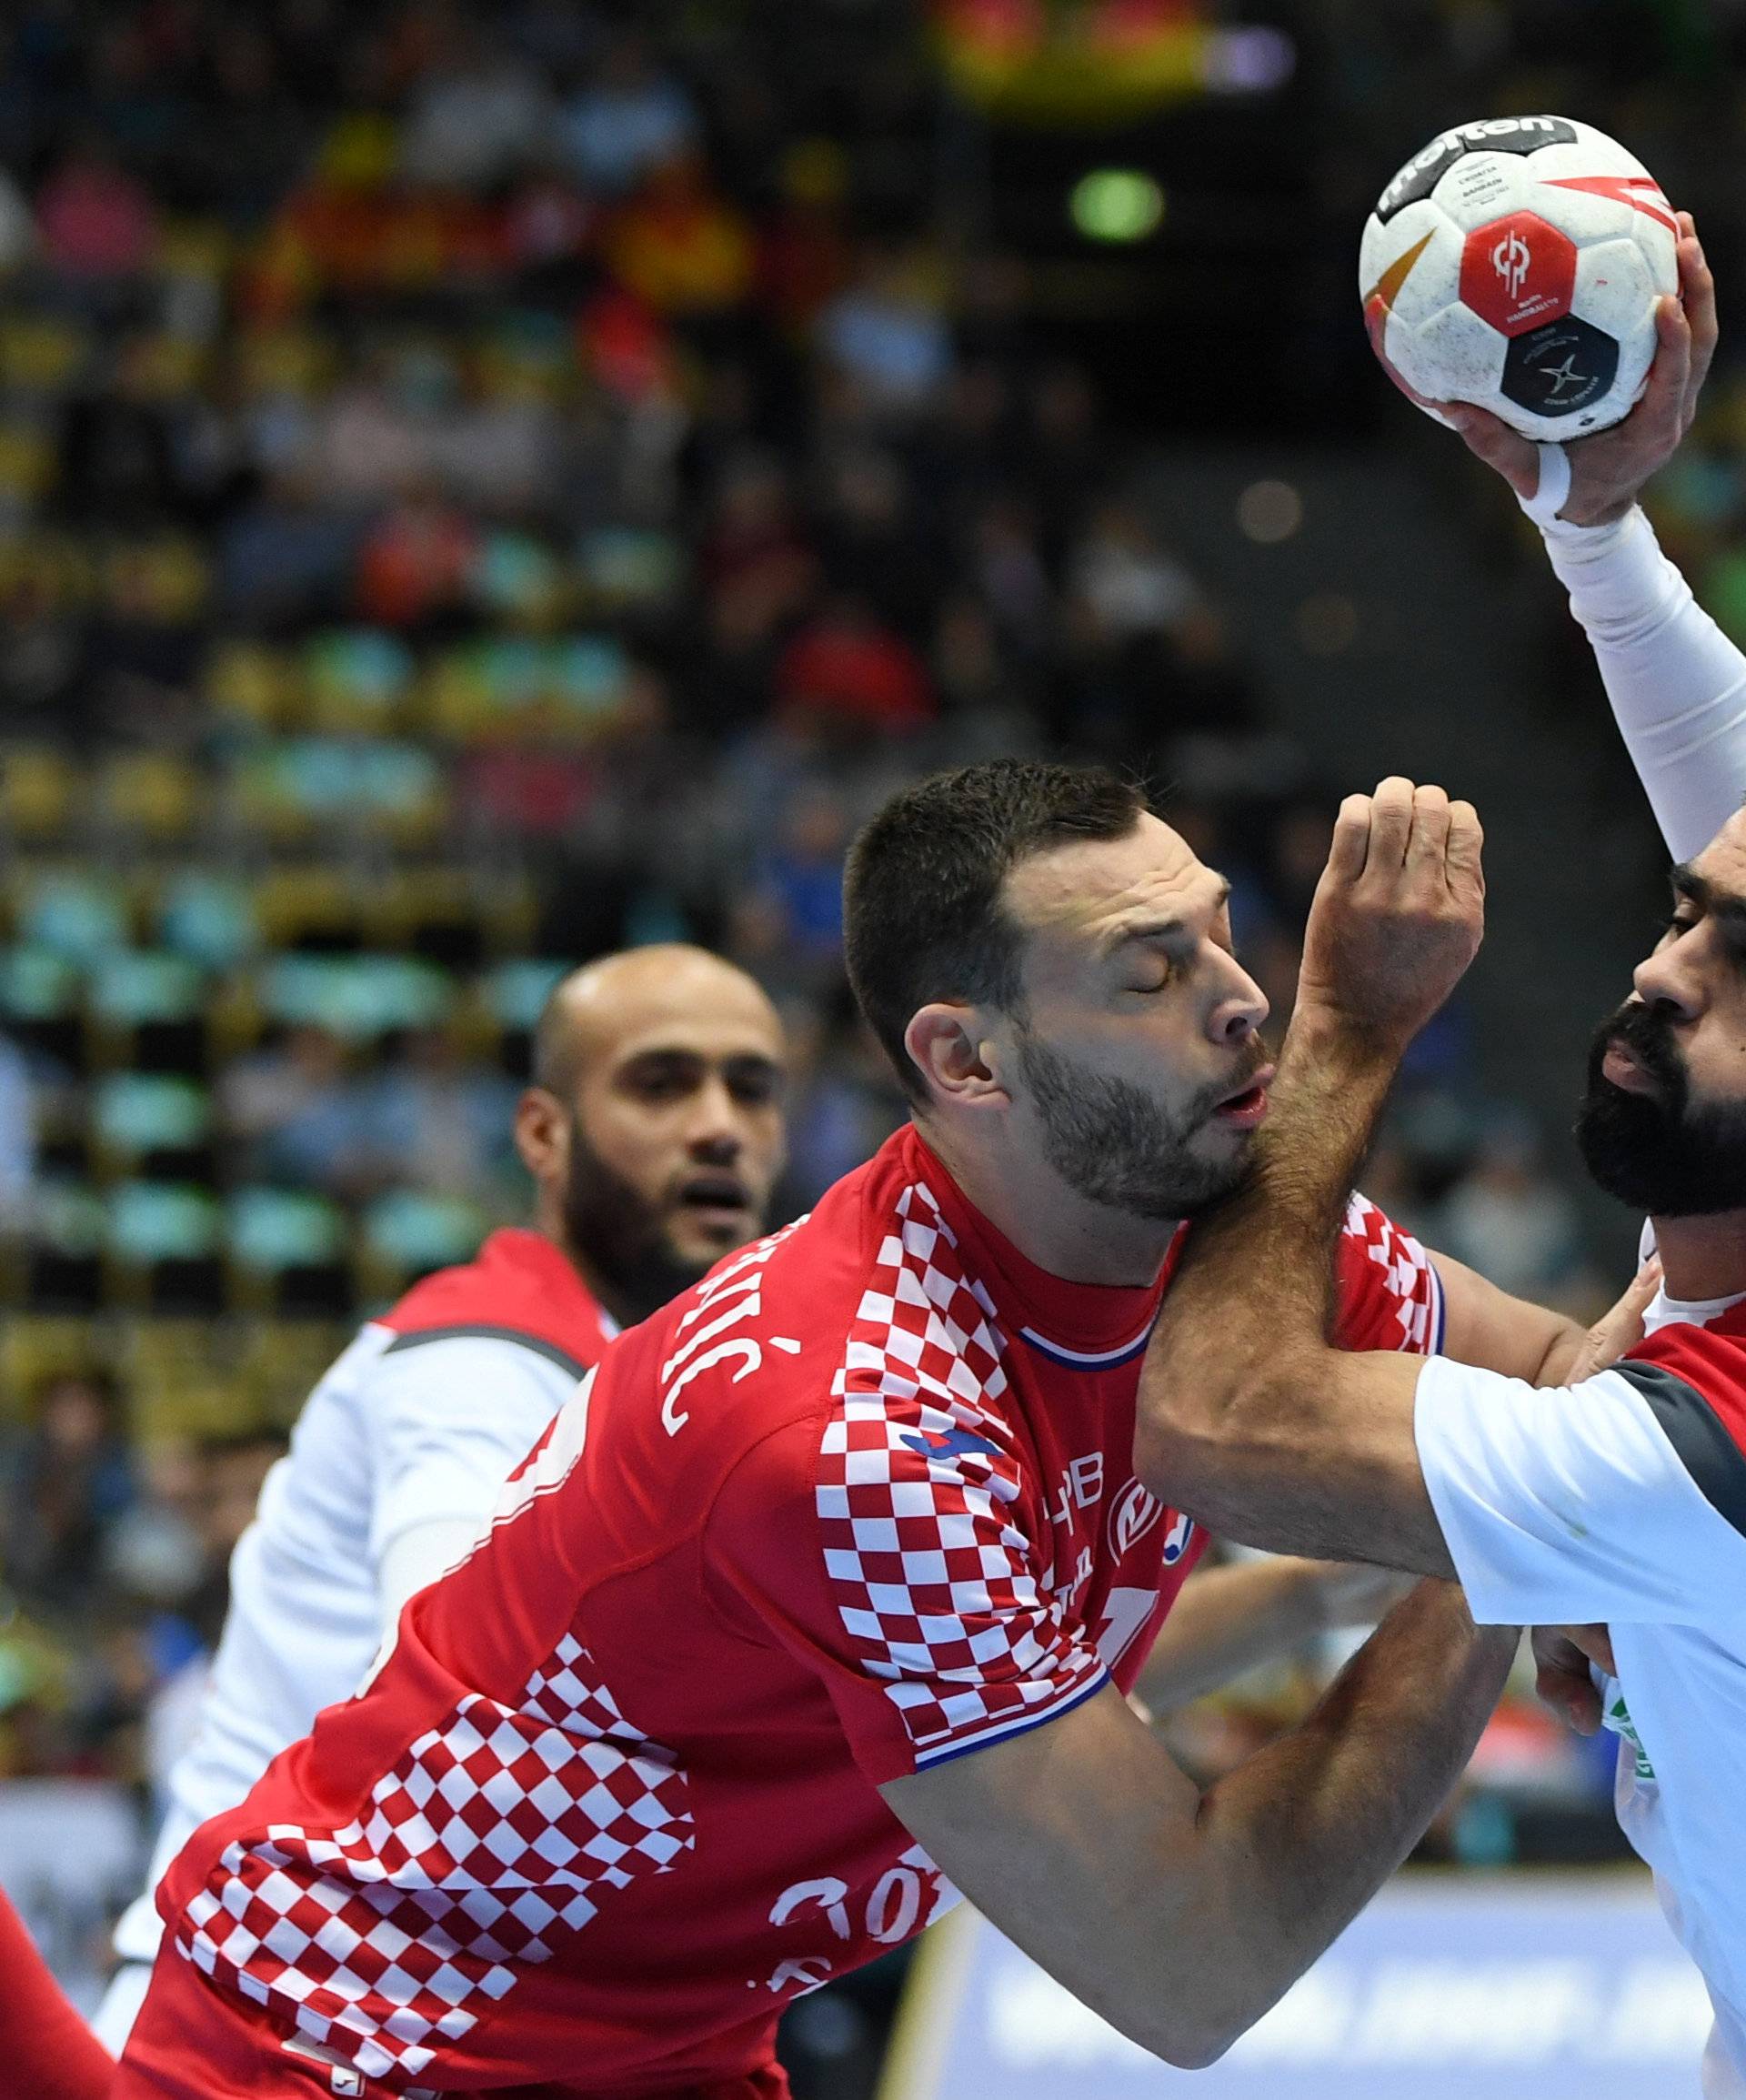 IHF Handball World Championship - Germany & Denmark 2019 - Group B - Croatia v Bahrain